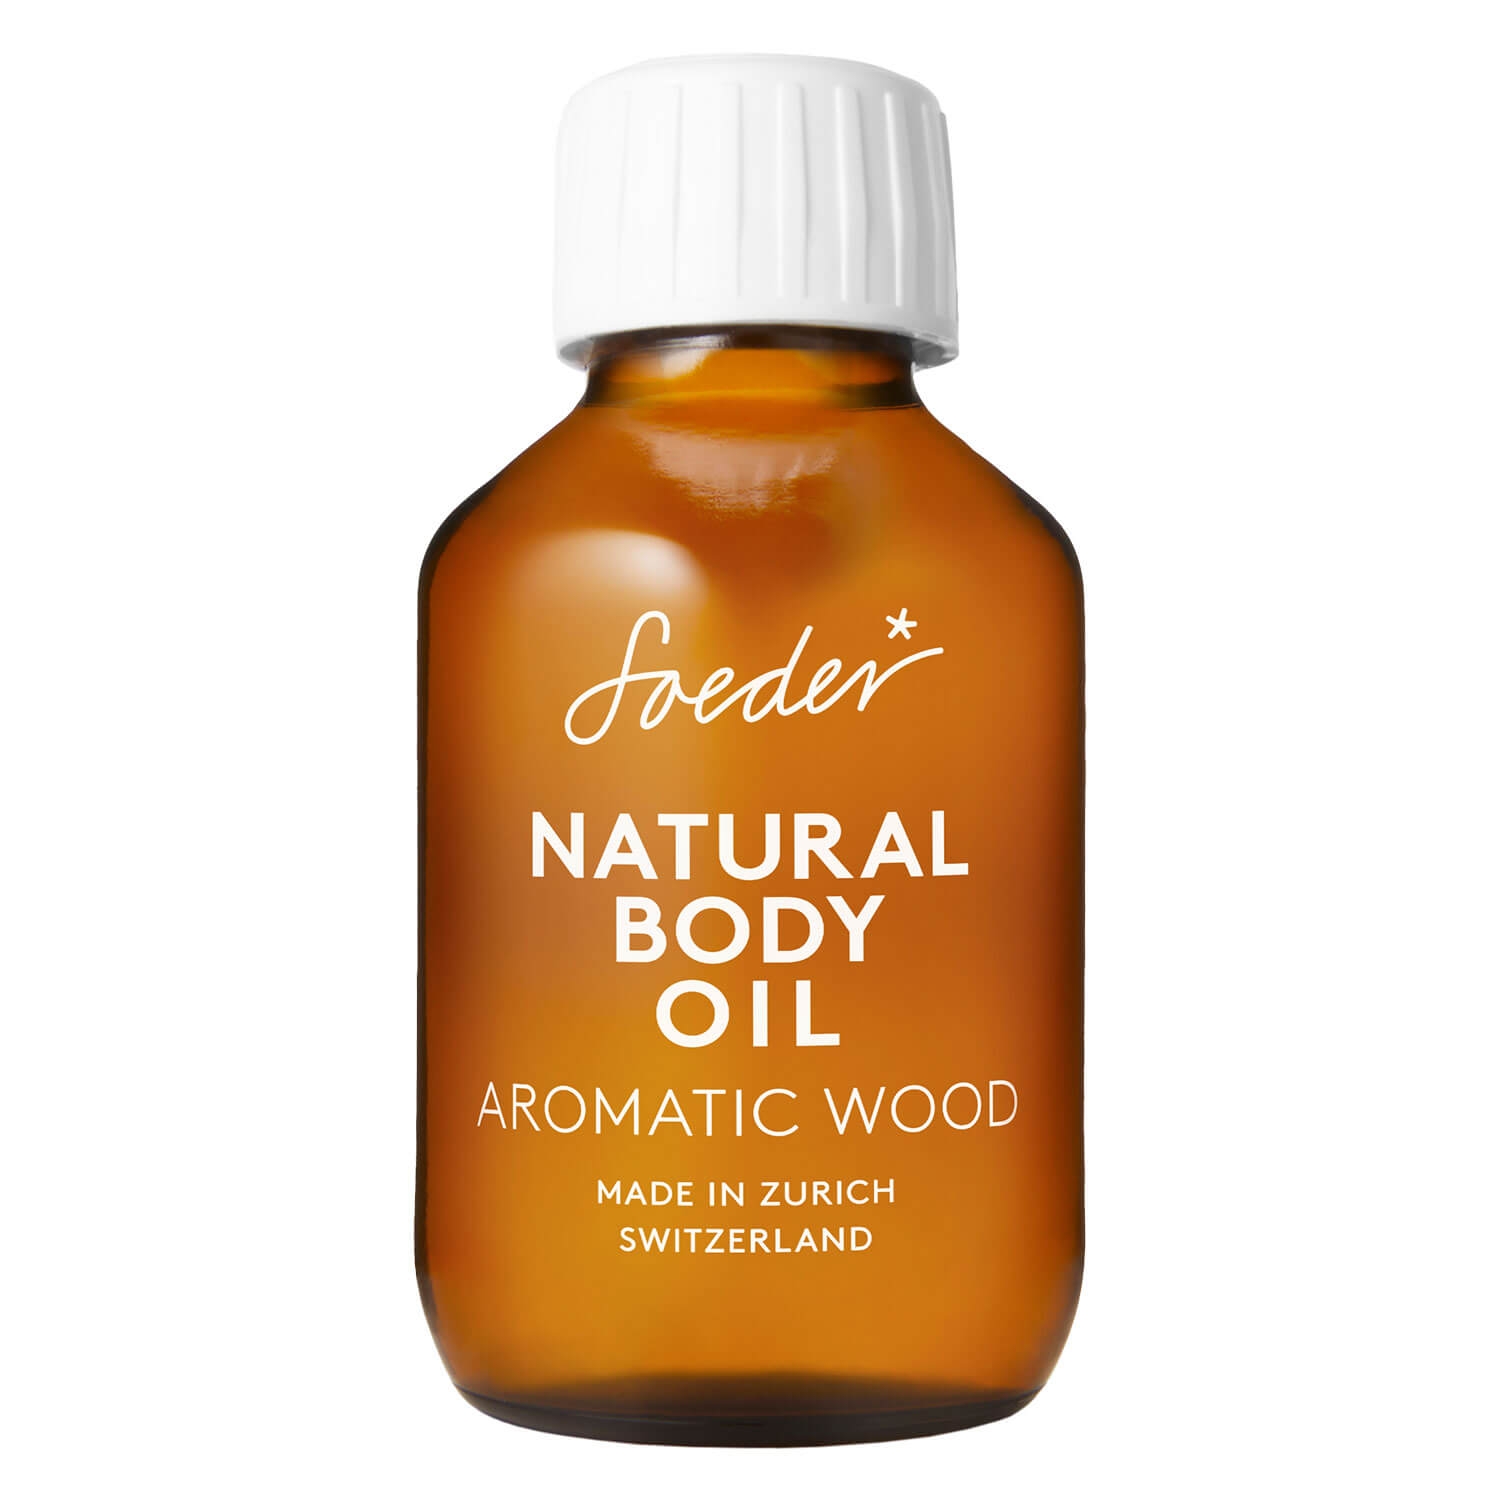 Image du produit de Soeder - Natural Body Oil Aromatic Wood